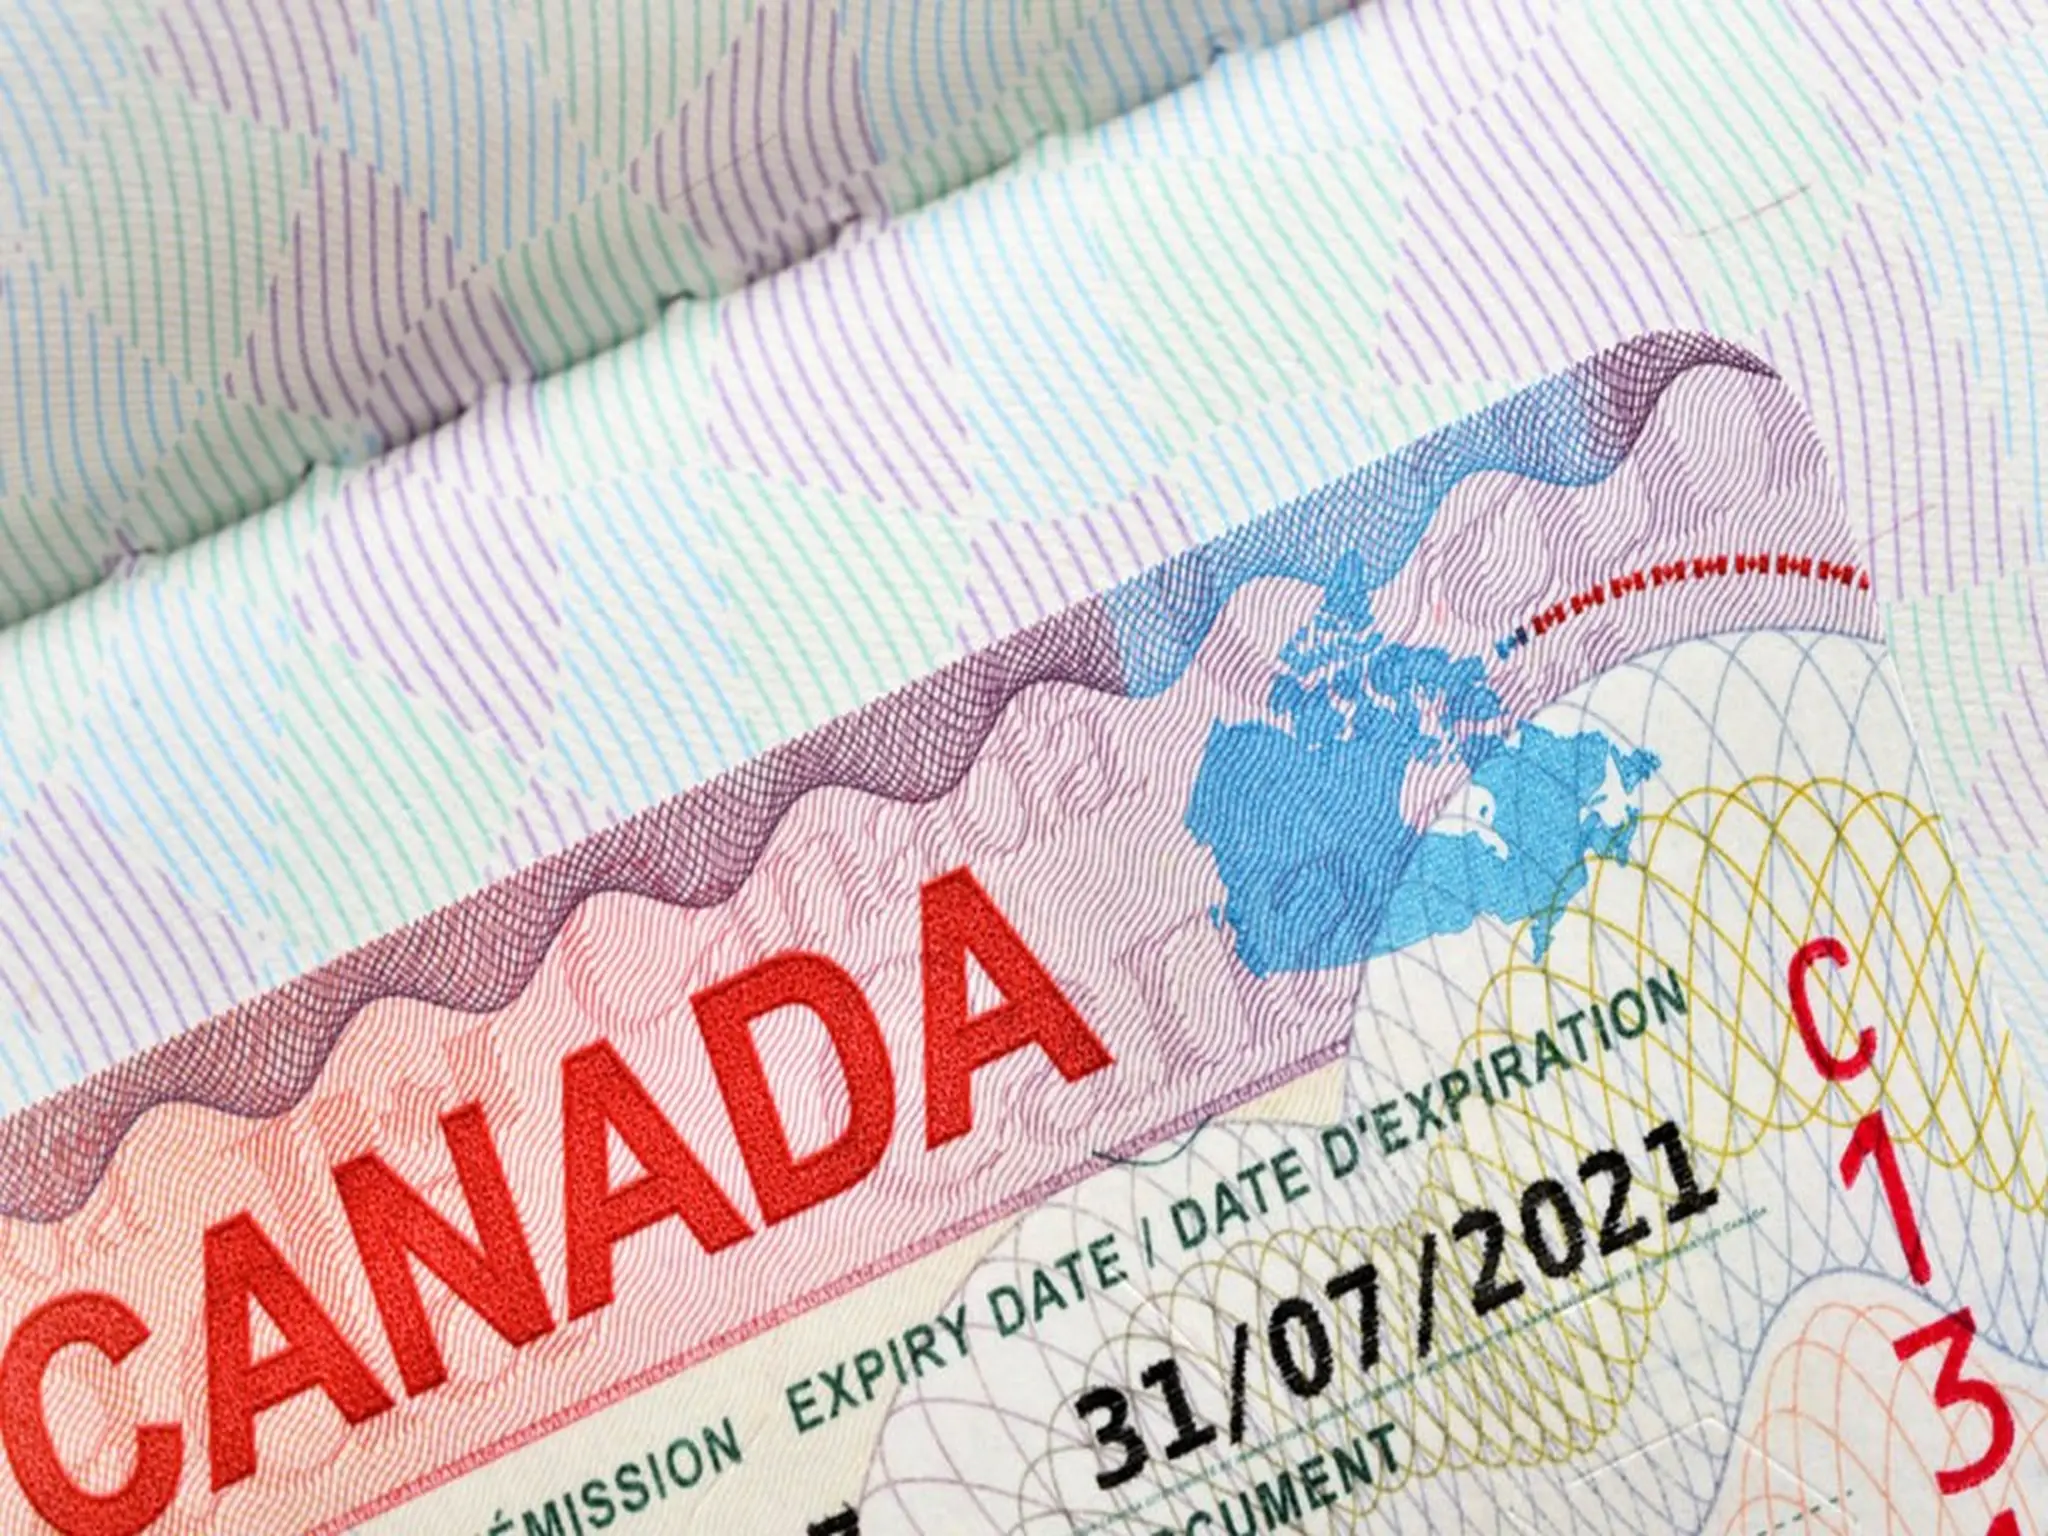 كندا تمنح تأشيرات مؤقتة تصل إلى ثلاث سنوات اعتبارا من ٩ يناير